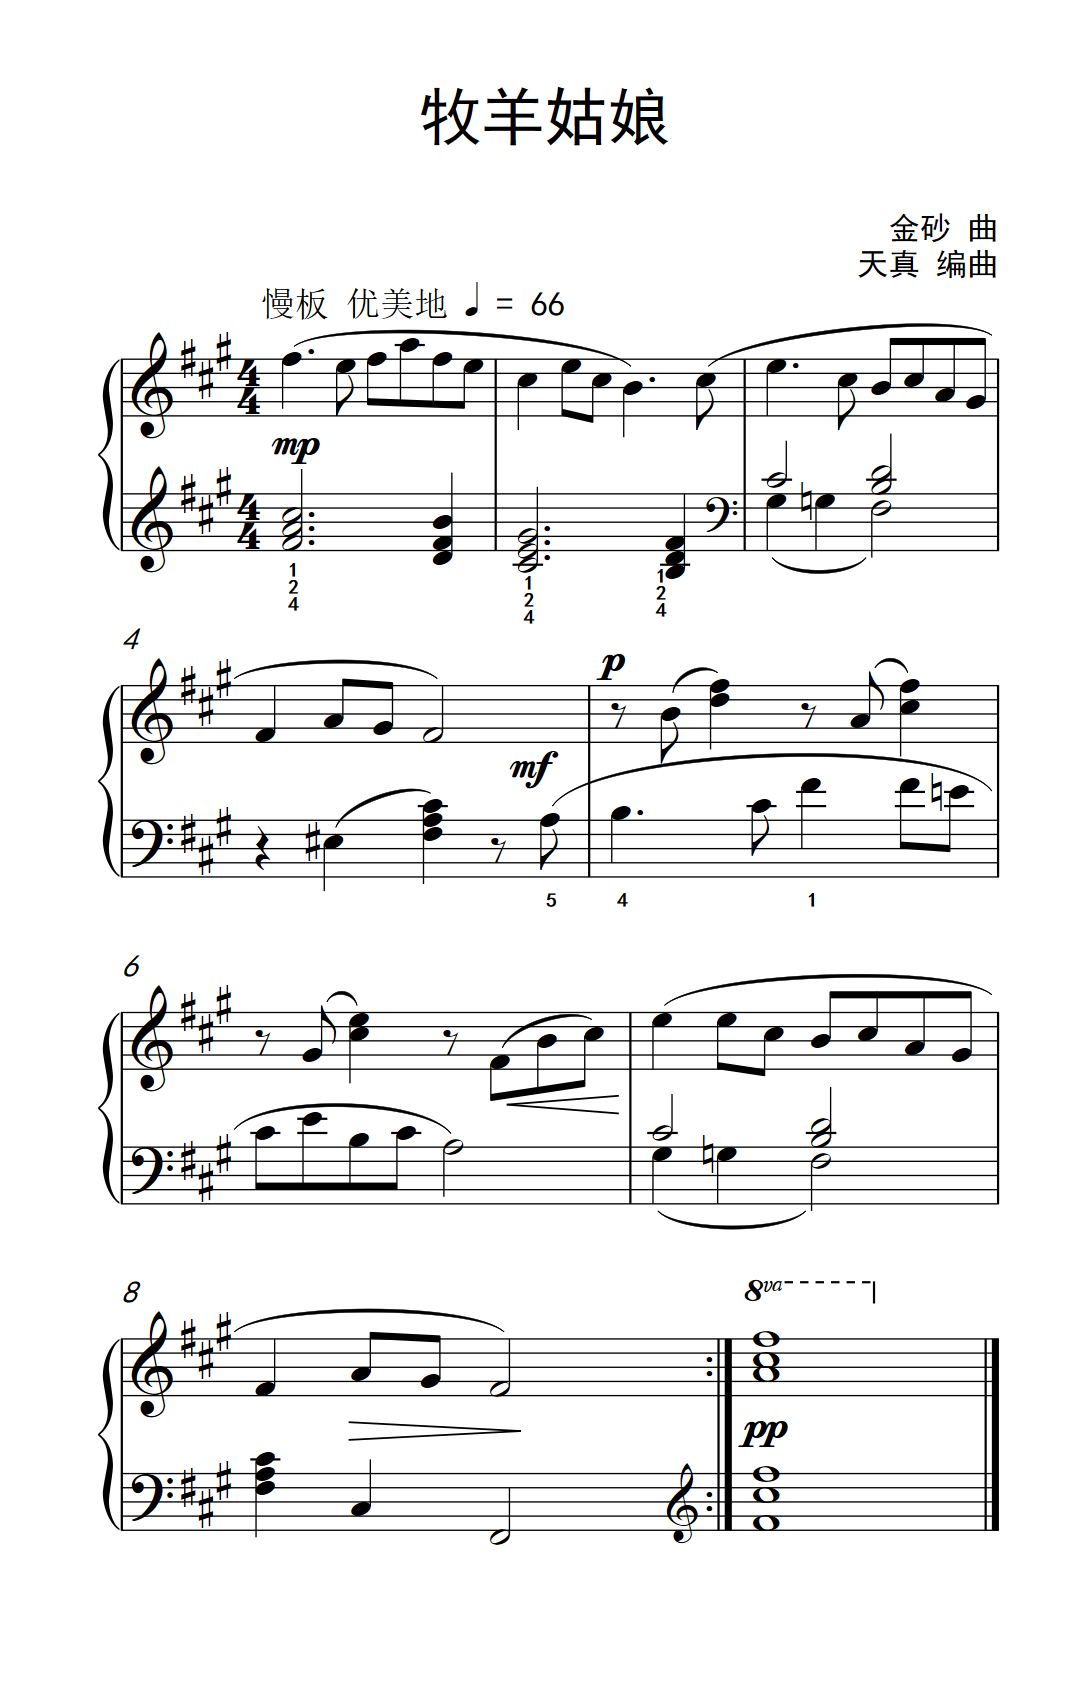 牧羊姑娘（约翰·汤普森 成人钢琴教程 第一册）钢琴谱图